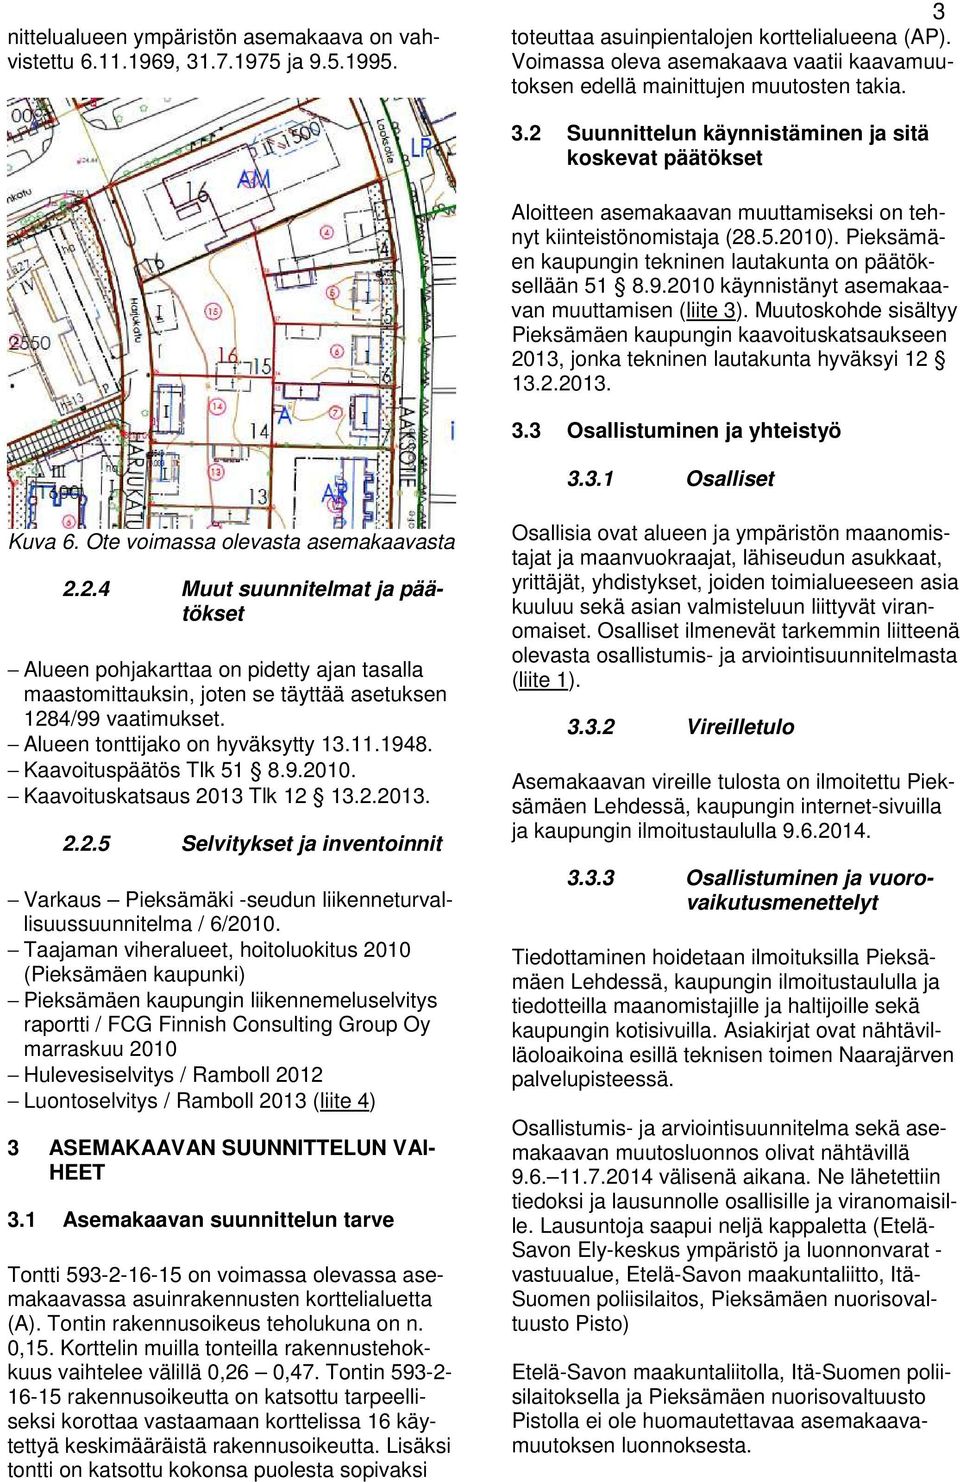 2010 käynnisäny asemakaavan muuamisen (liie 3). Muuoskohde sisälyy Pieksämäen kaupungin kaavoiuskasaukseen 2013, jonka ekninen lauakuna hyväksyi 12 13.2.2013. 3.3 Osallisuminen ja yheisyö 3.3.1 Osallise Kuva 6.